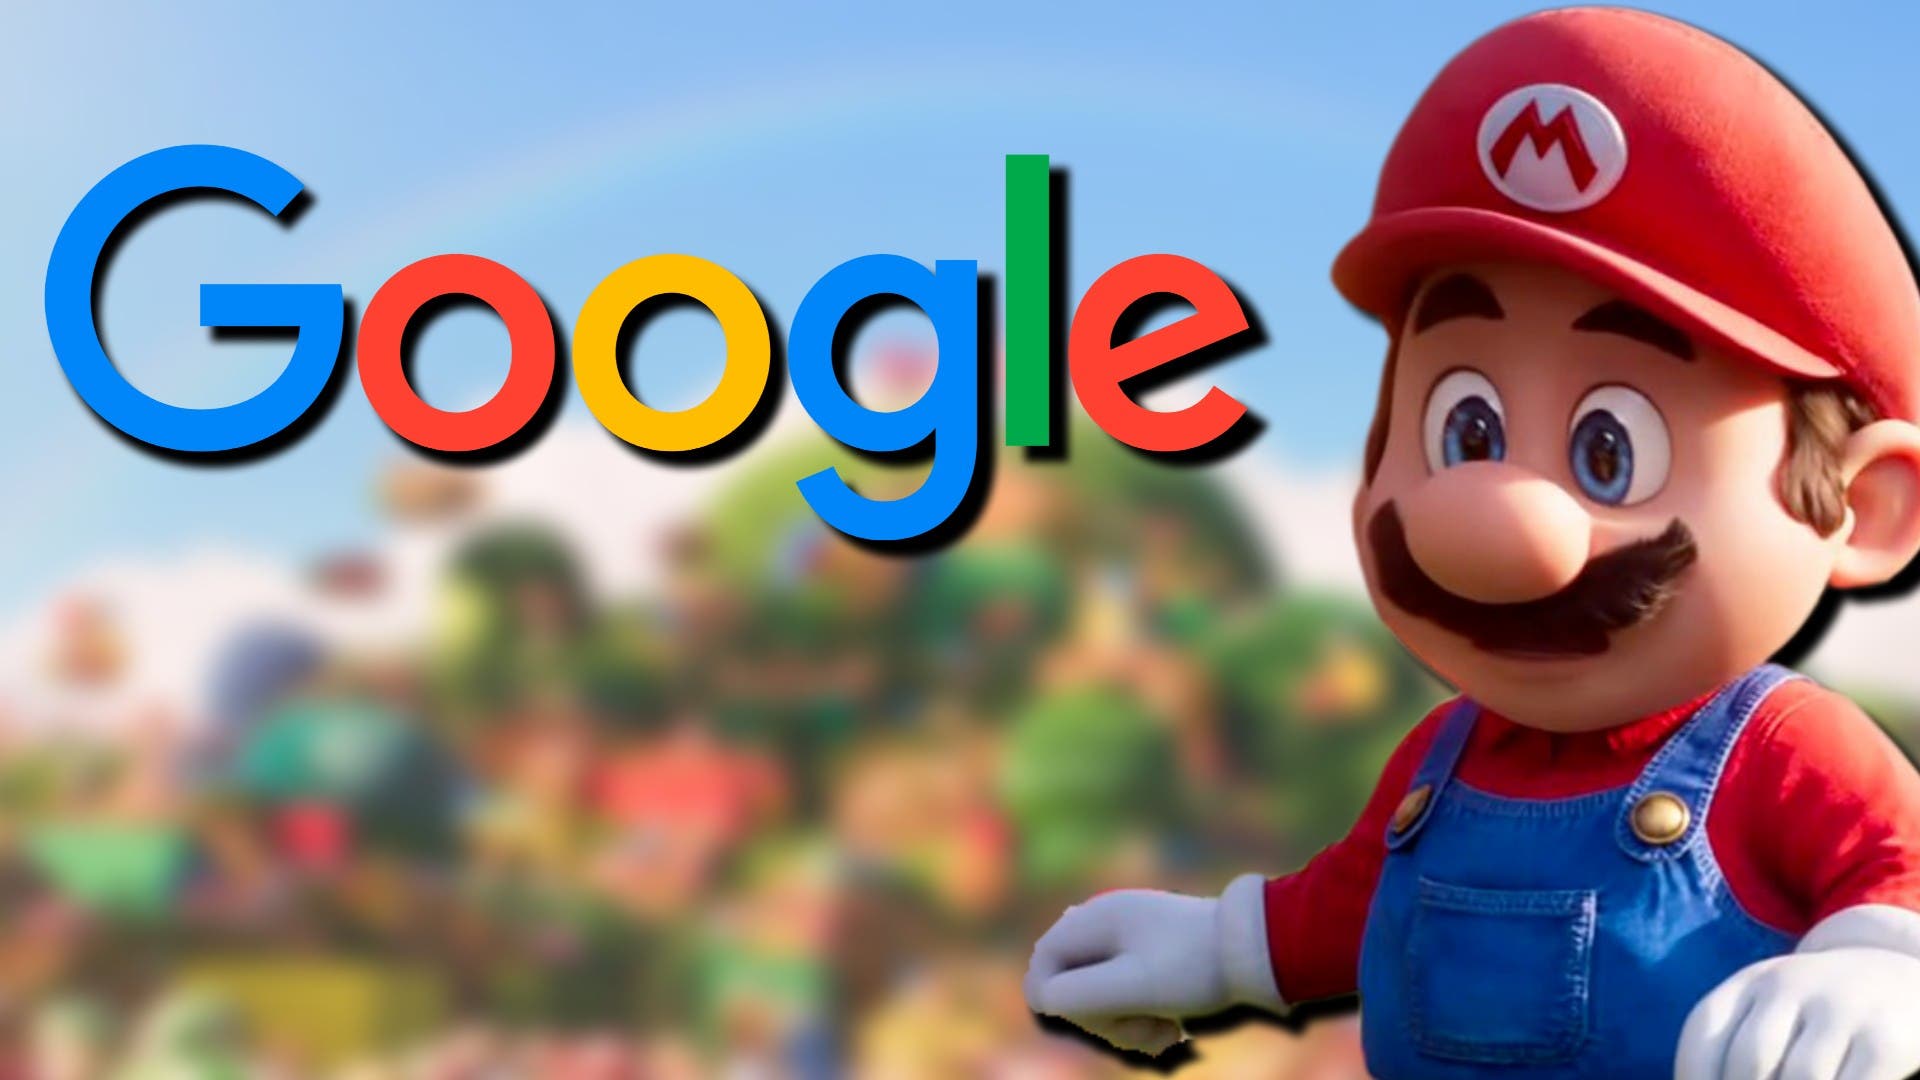 Google muestra un simpático huevo de pascua con la película de Super Mario